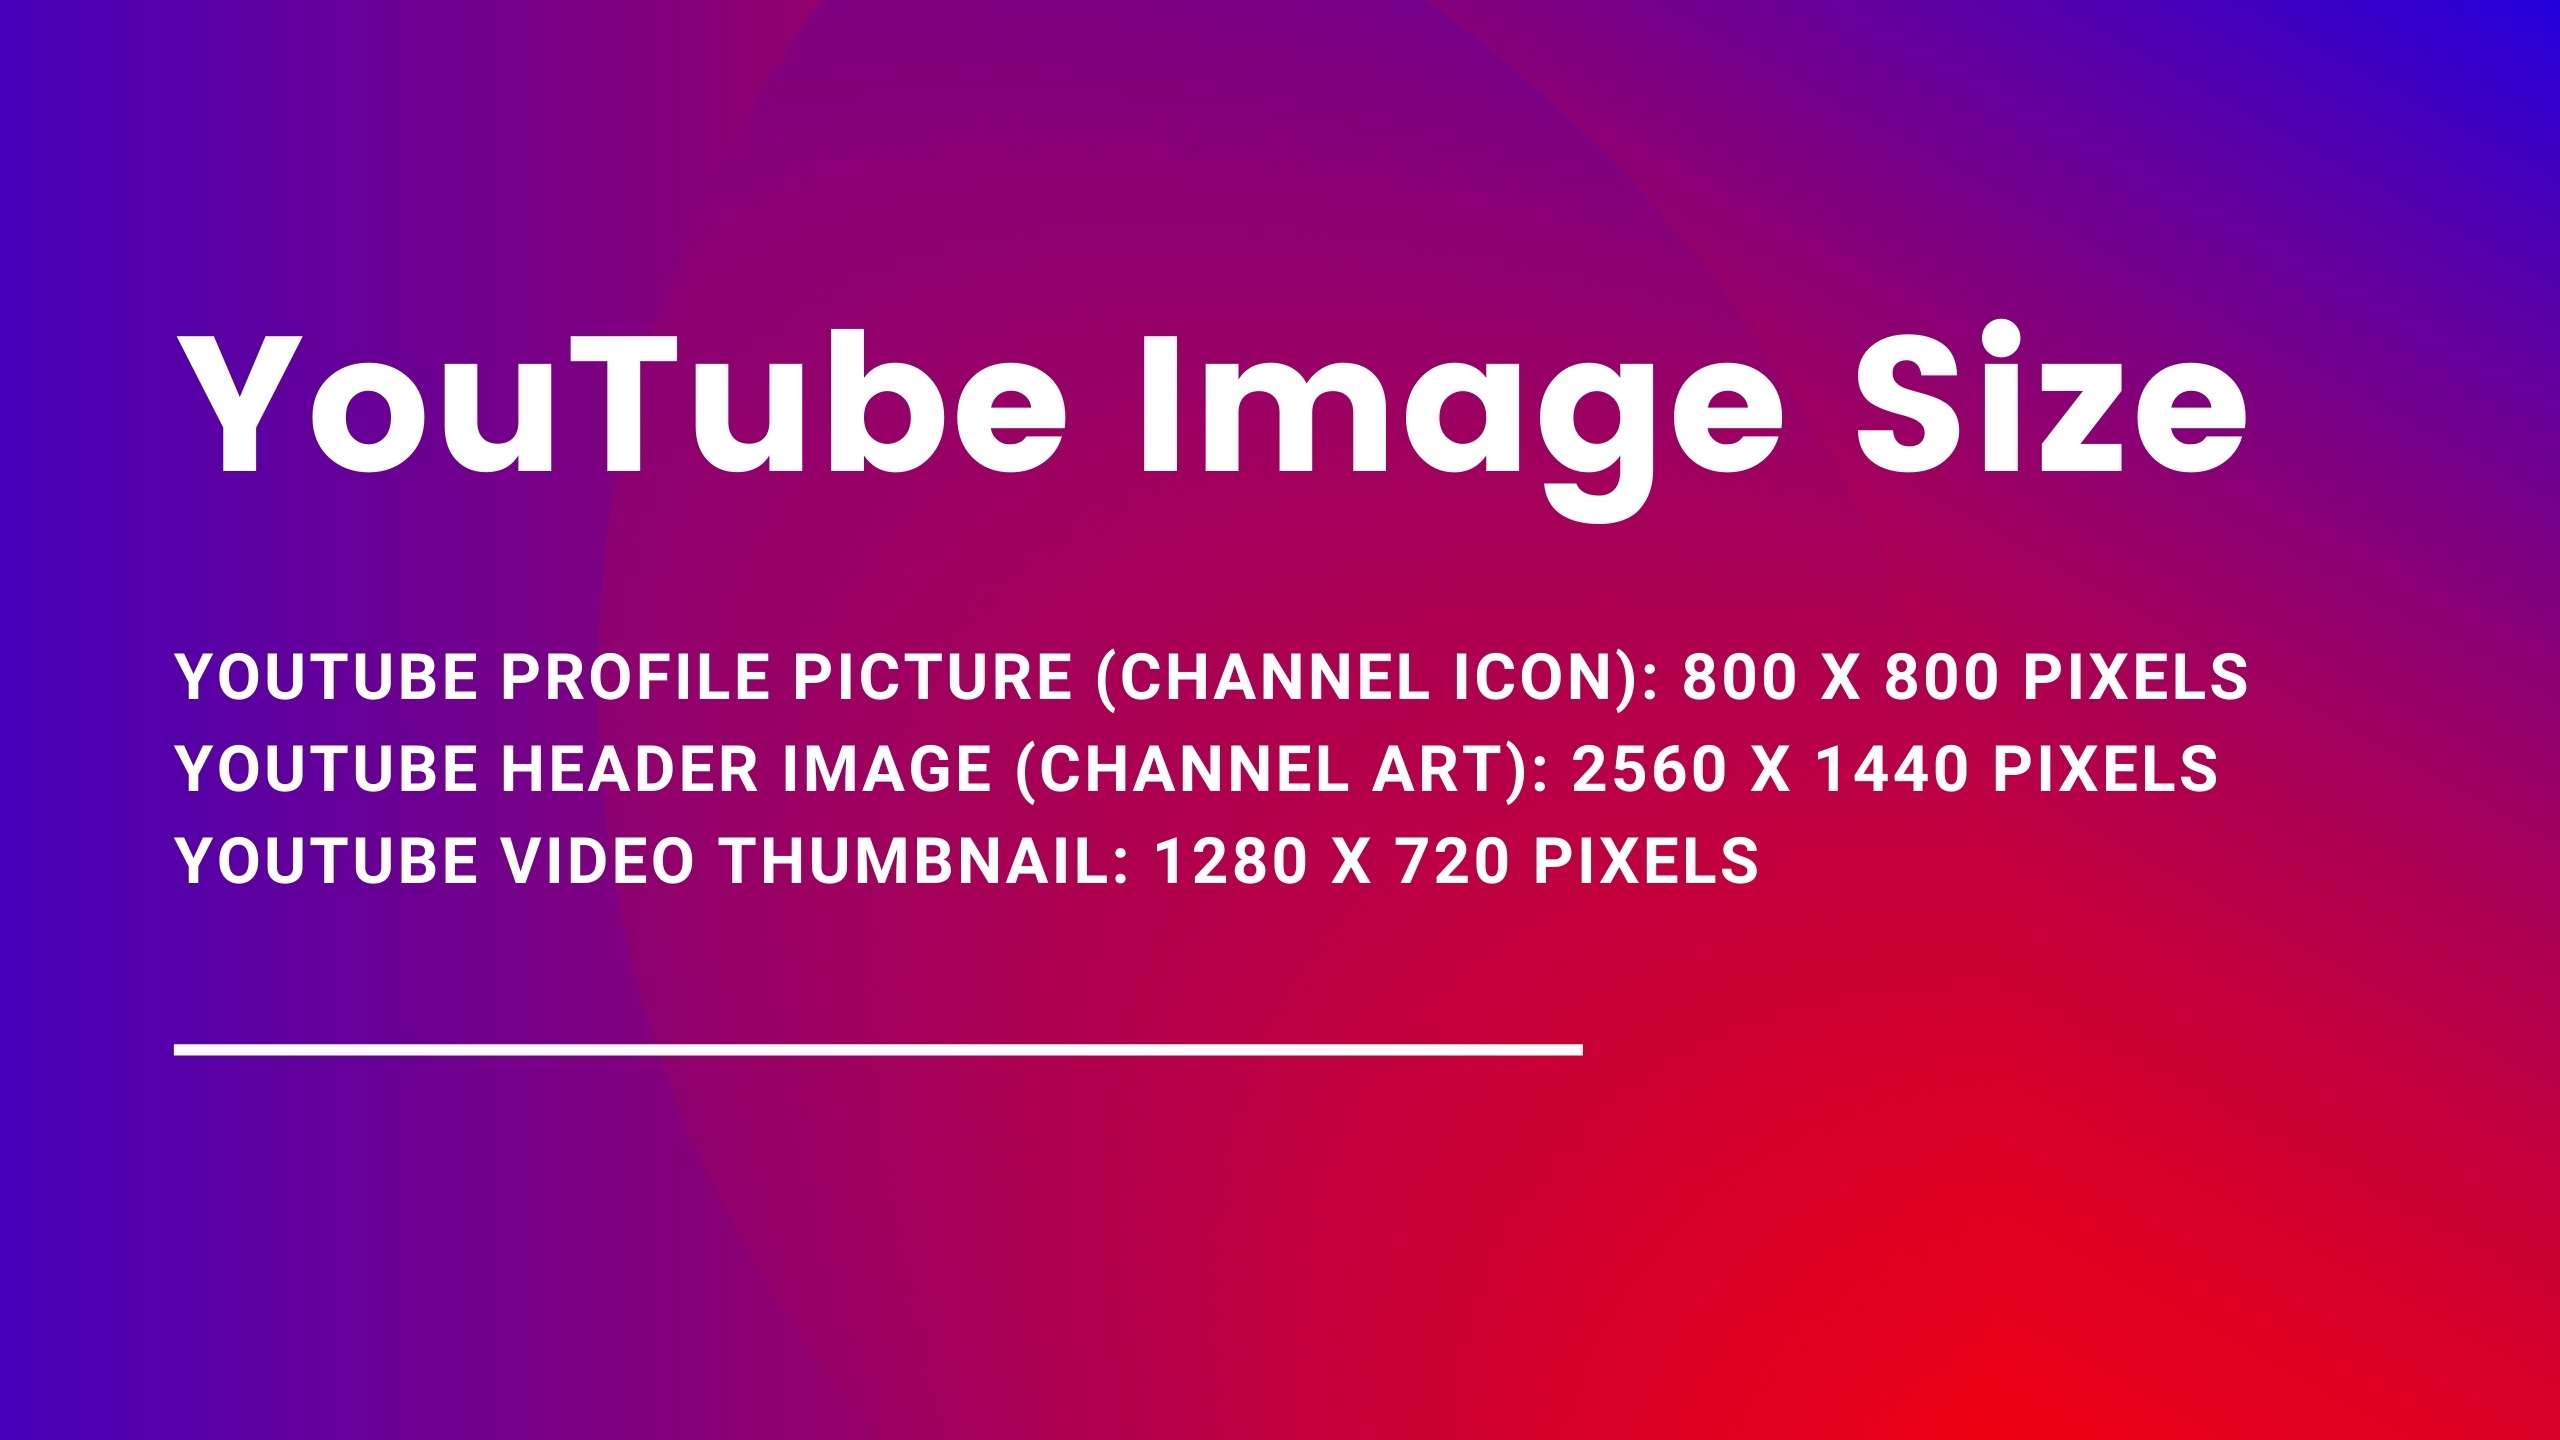 Youtube image size